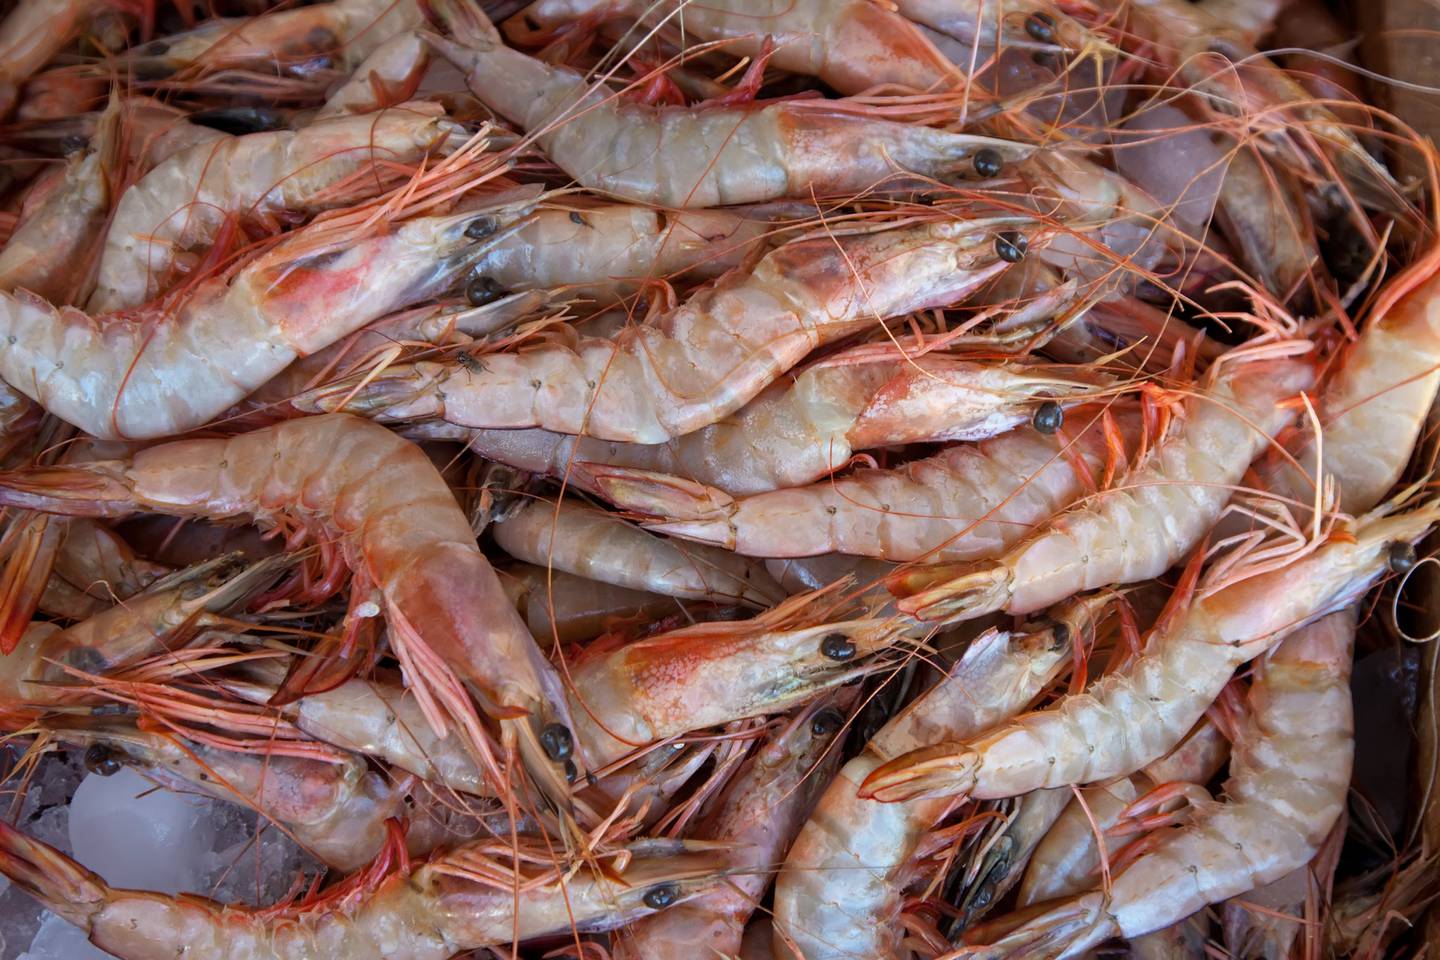 En el año 2019 se exportaron 502 toneladas de camarón a Tailandia.